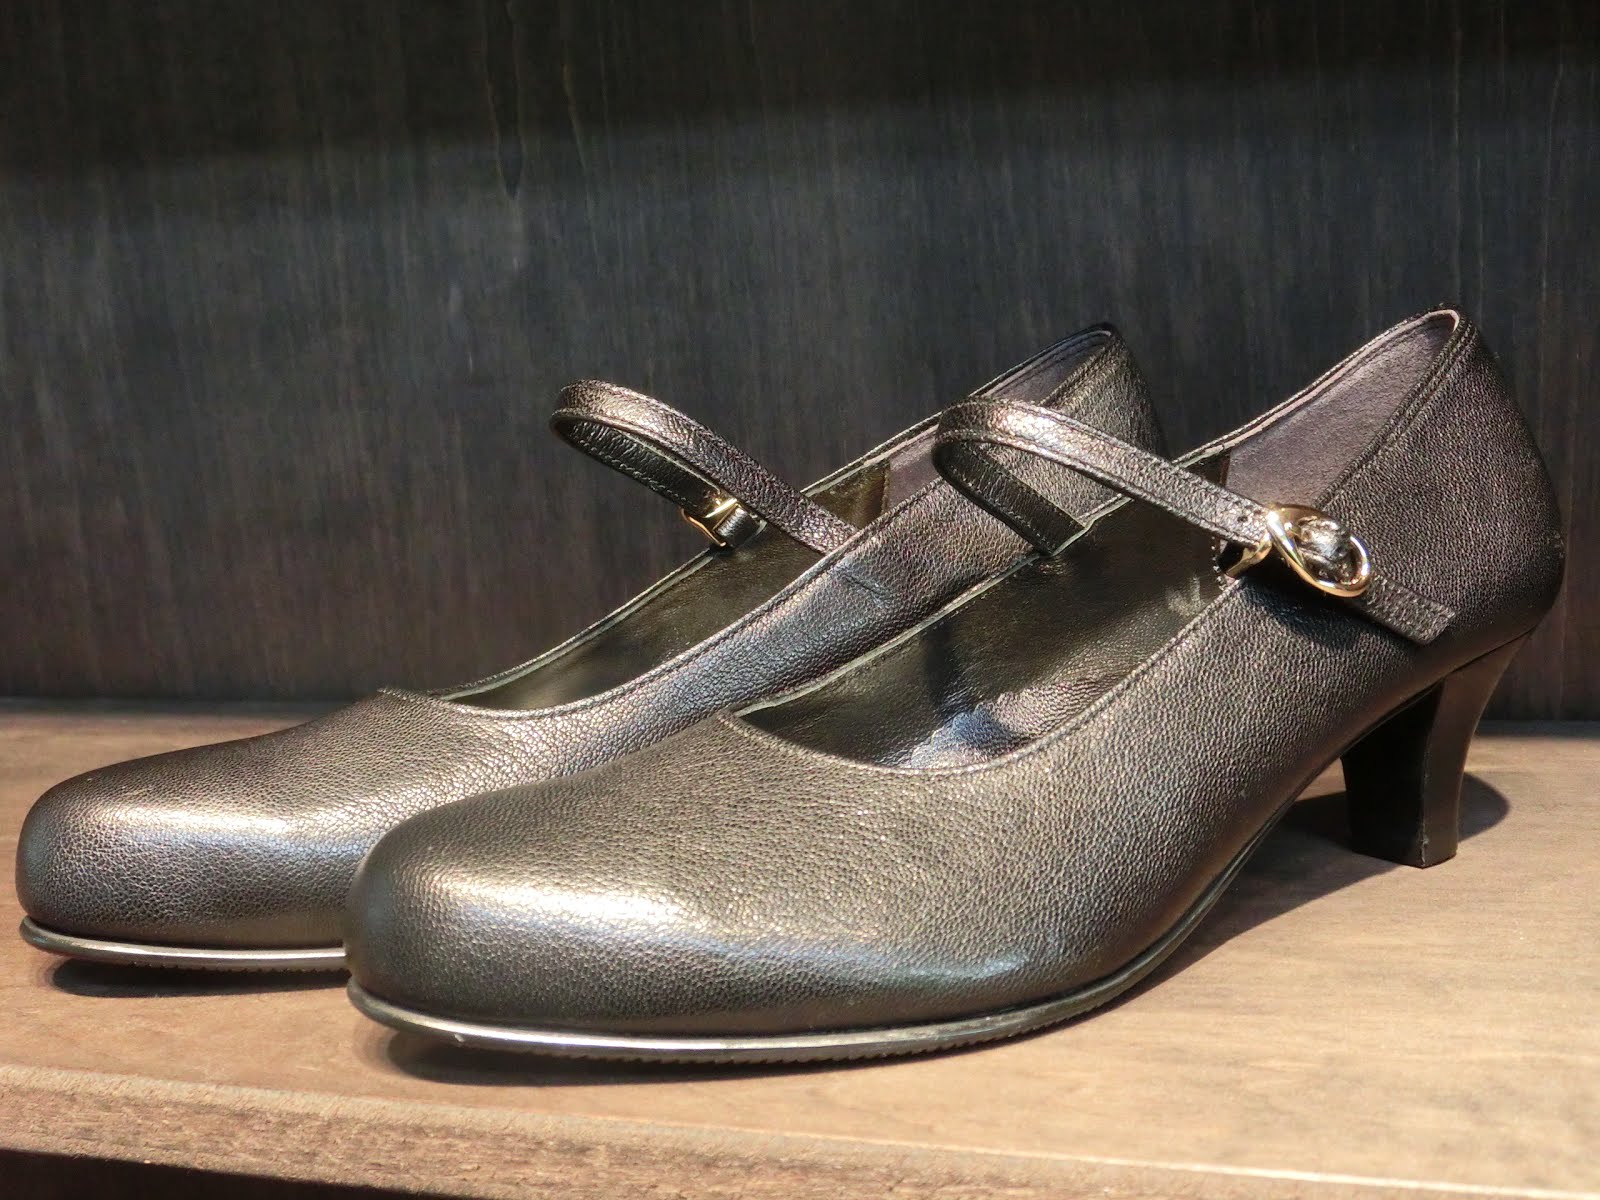 メディカルオーダーメイド靴のフットアイメディカル 銀座店 店長ブログ: NEW DESIGNの靴 パートⅡ